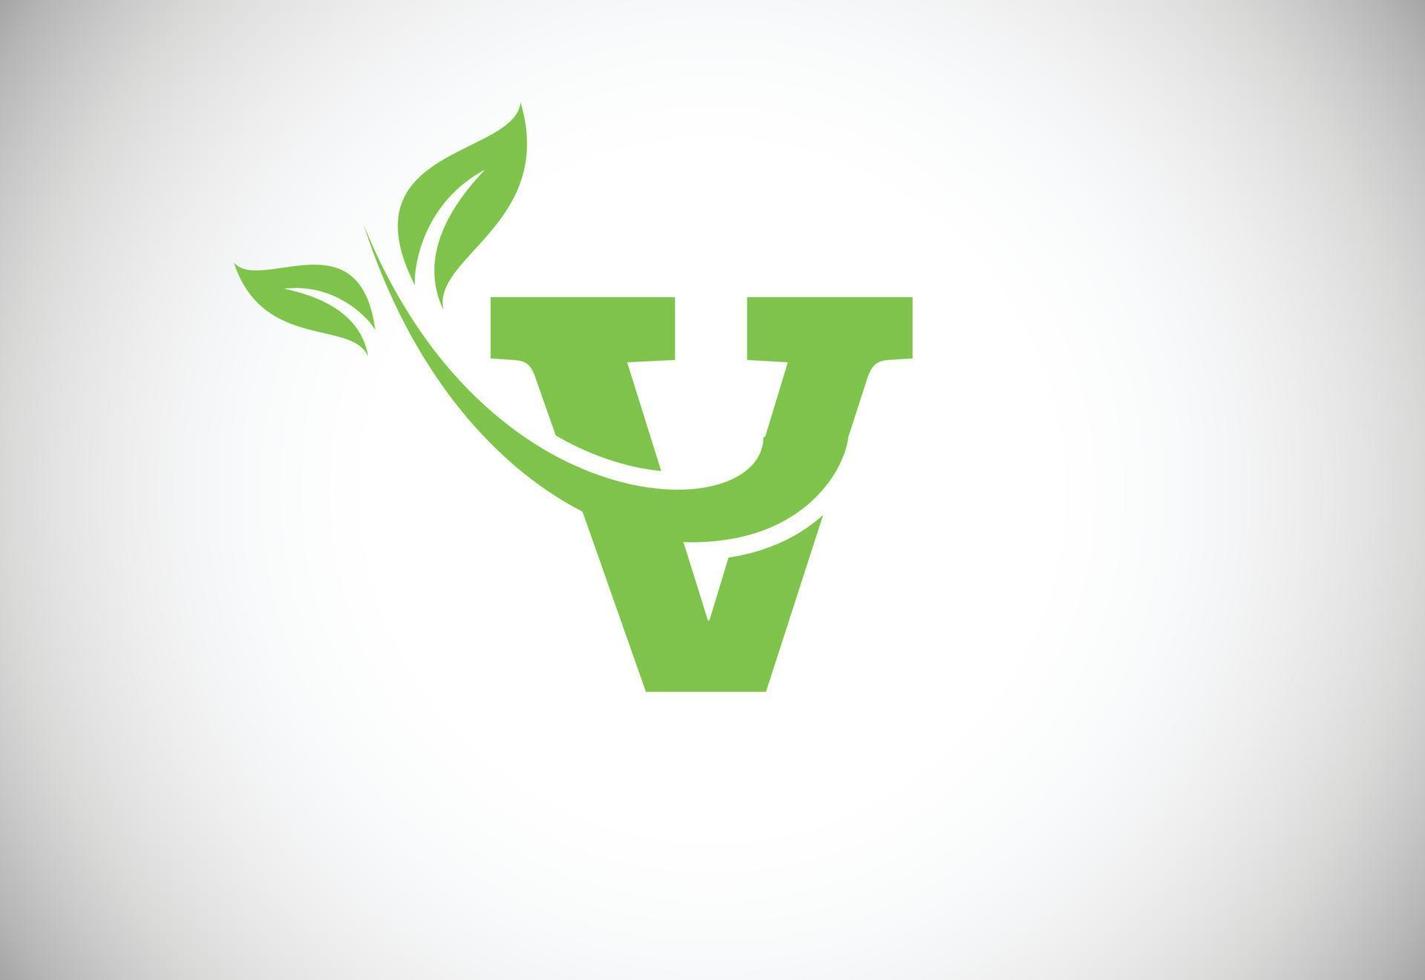 iniziale lettera v e foglia logo. eco-friendly logo concetto. moderno vettore logo per ecologico attività commerciale e azienda identità